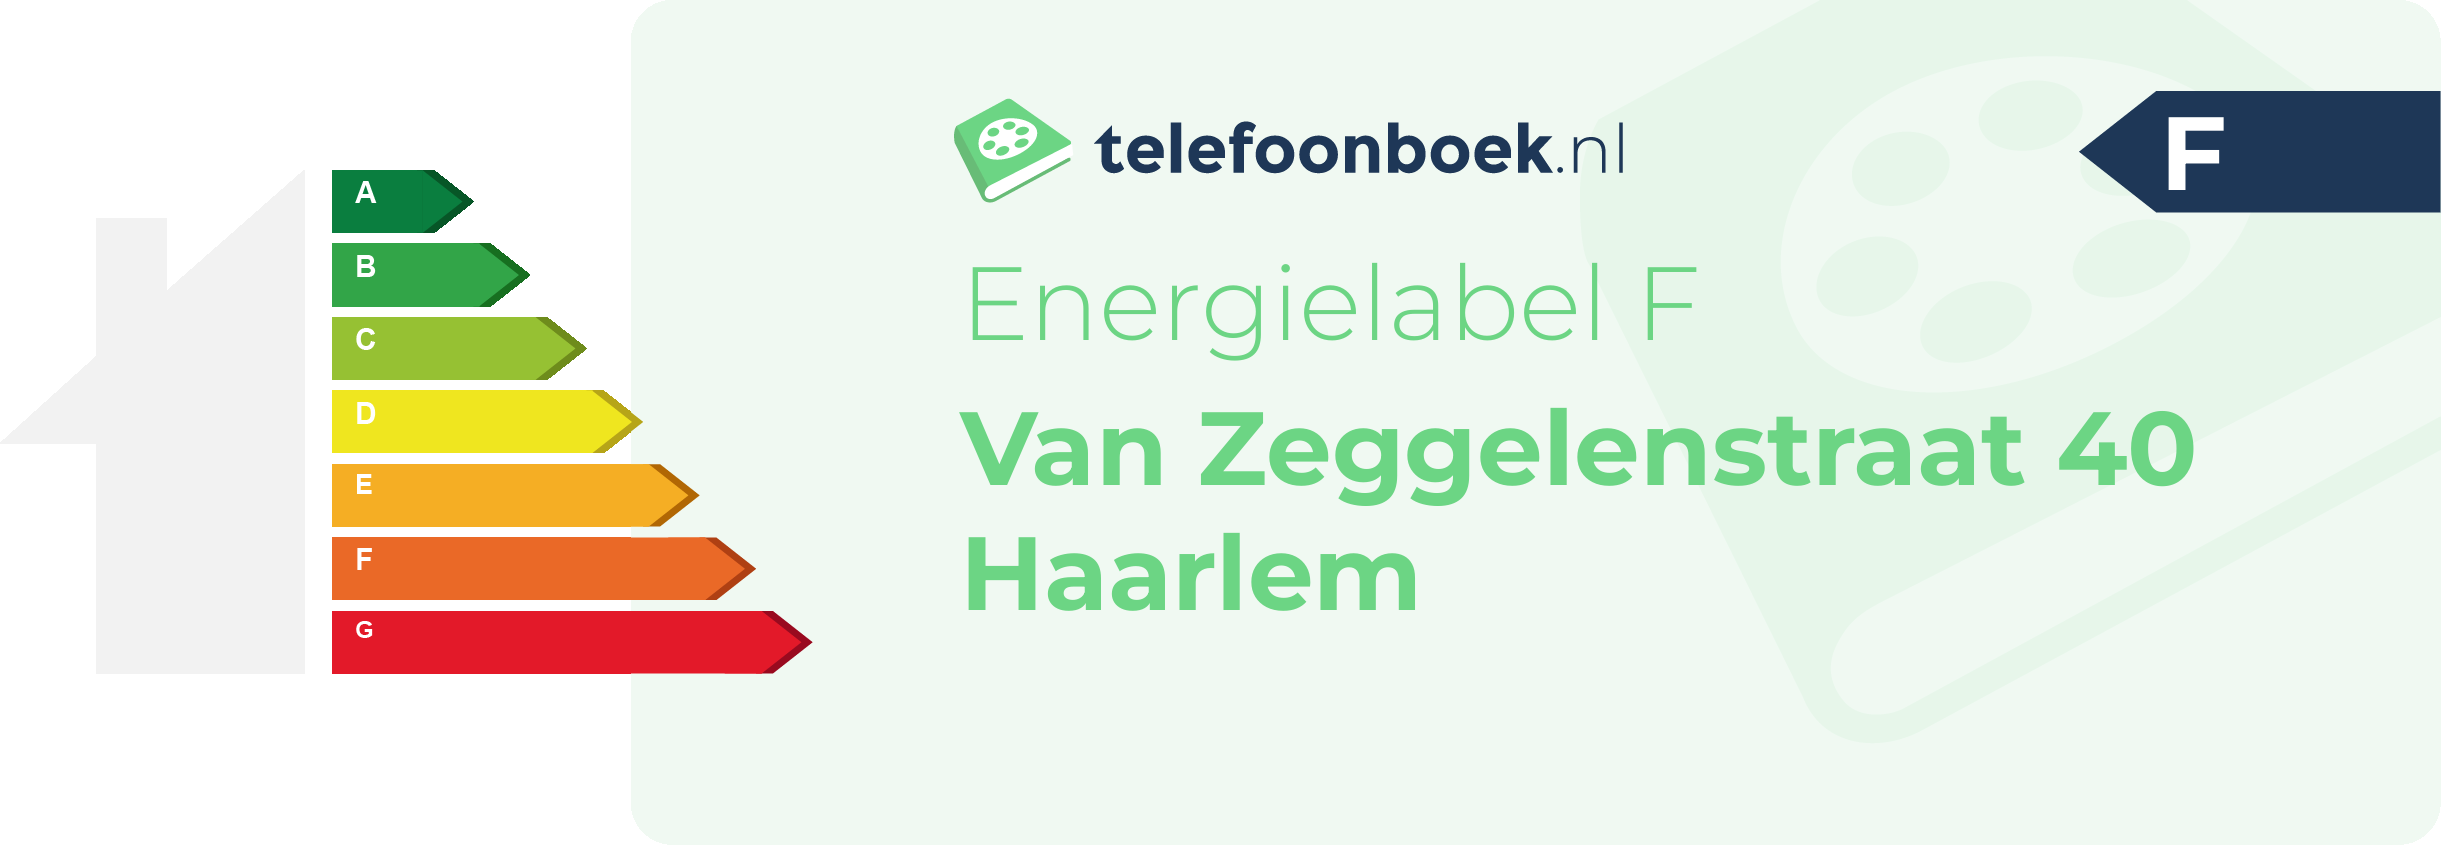 Energielabel Van Zeggelenstraat 40 Haarlem